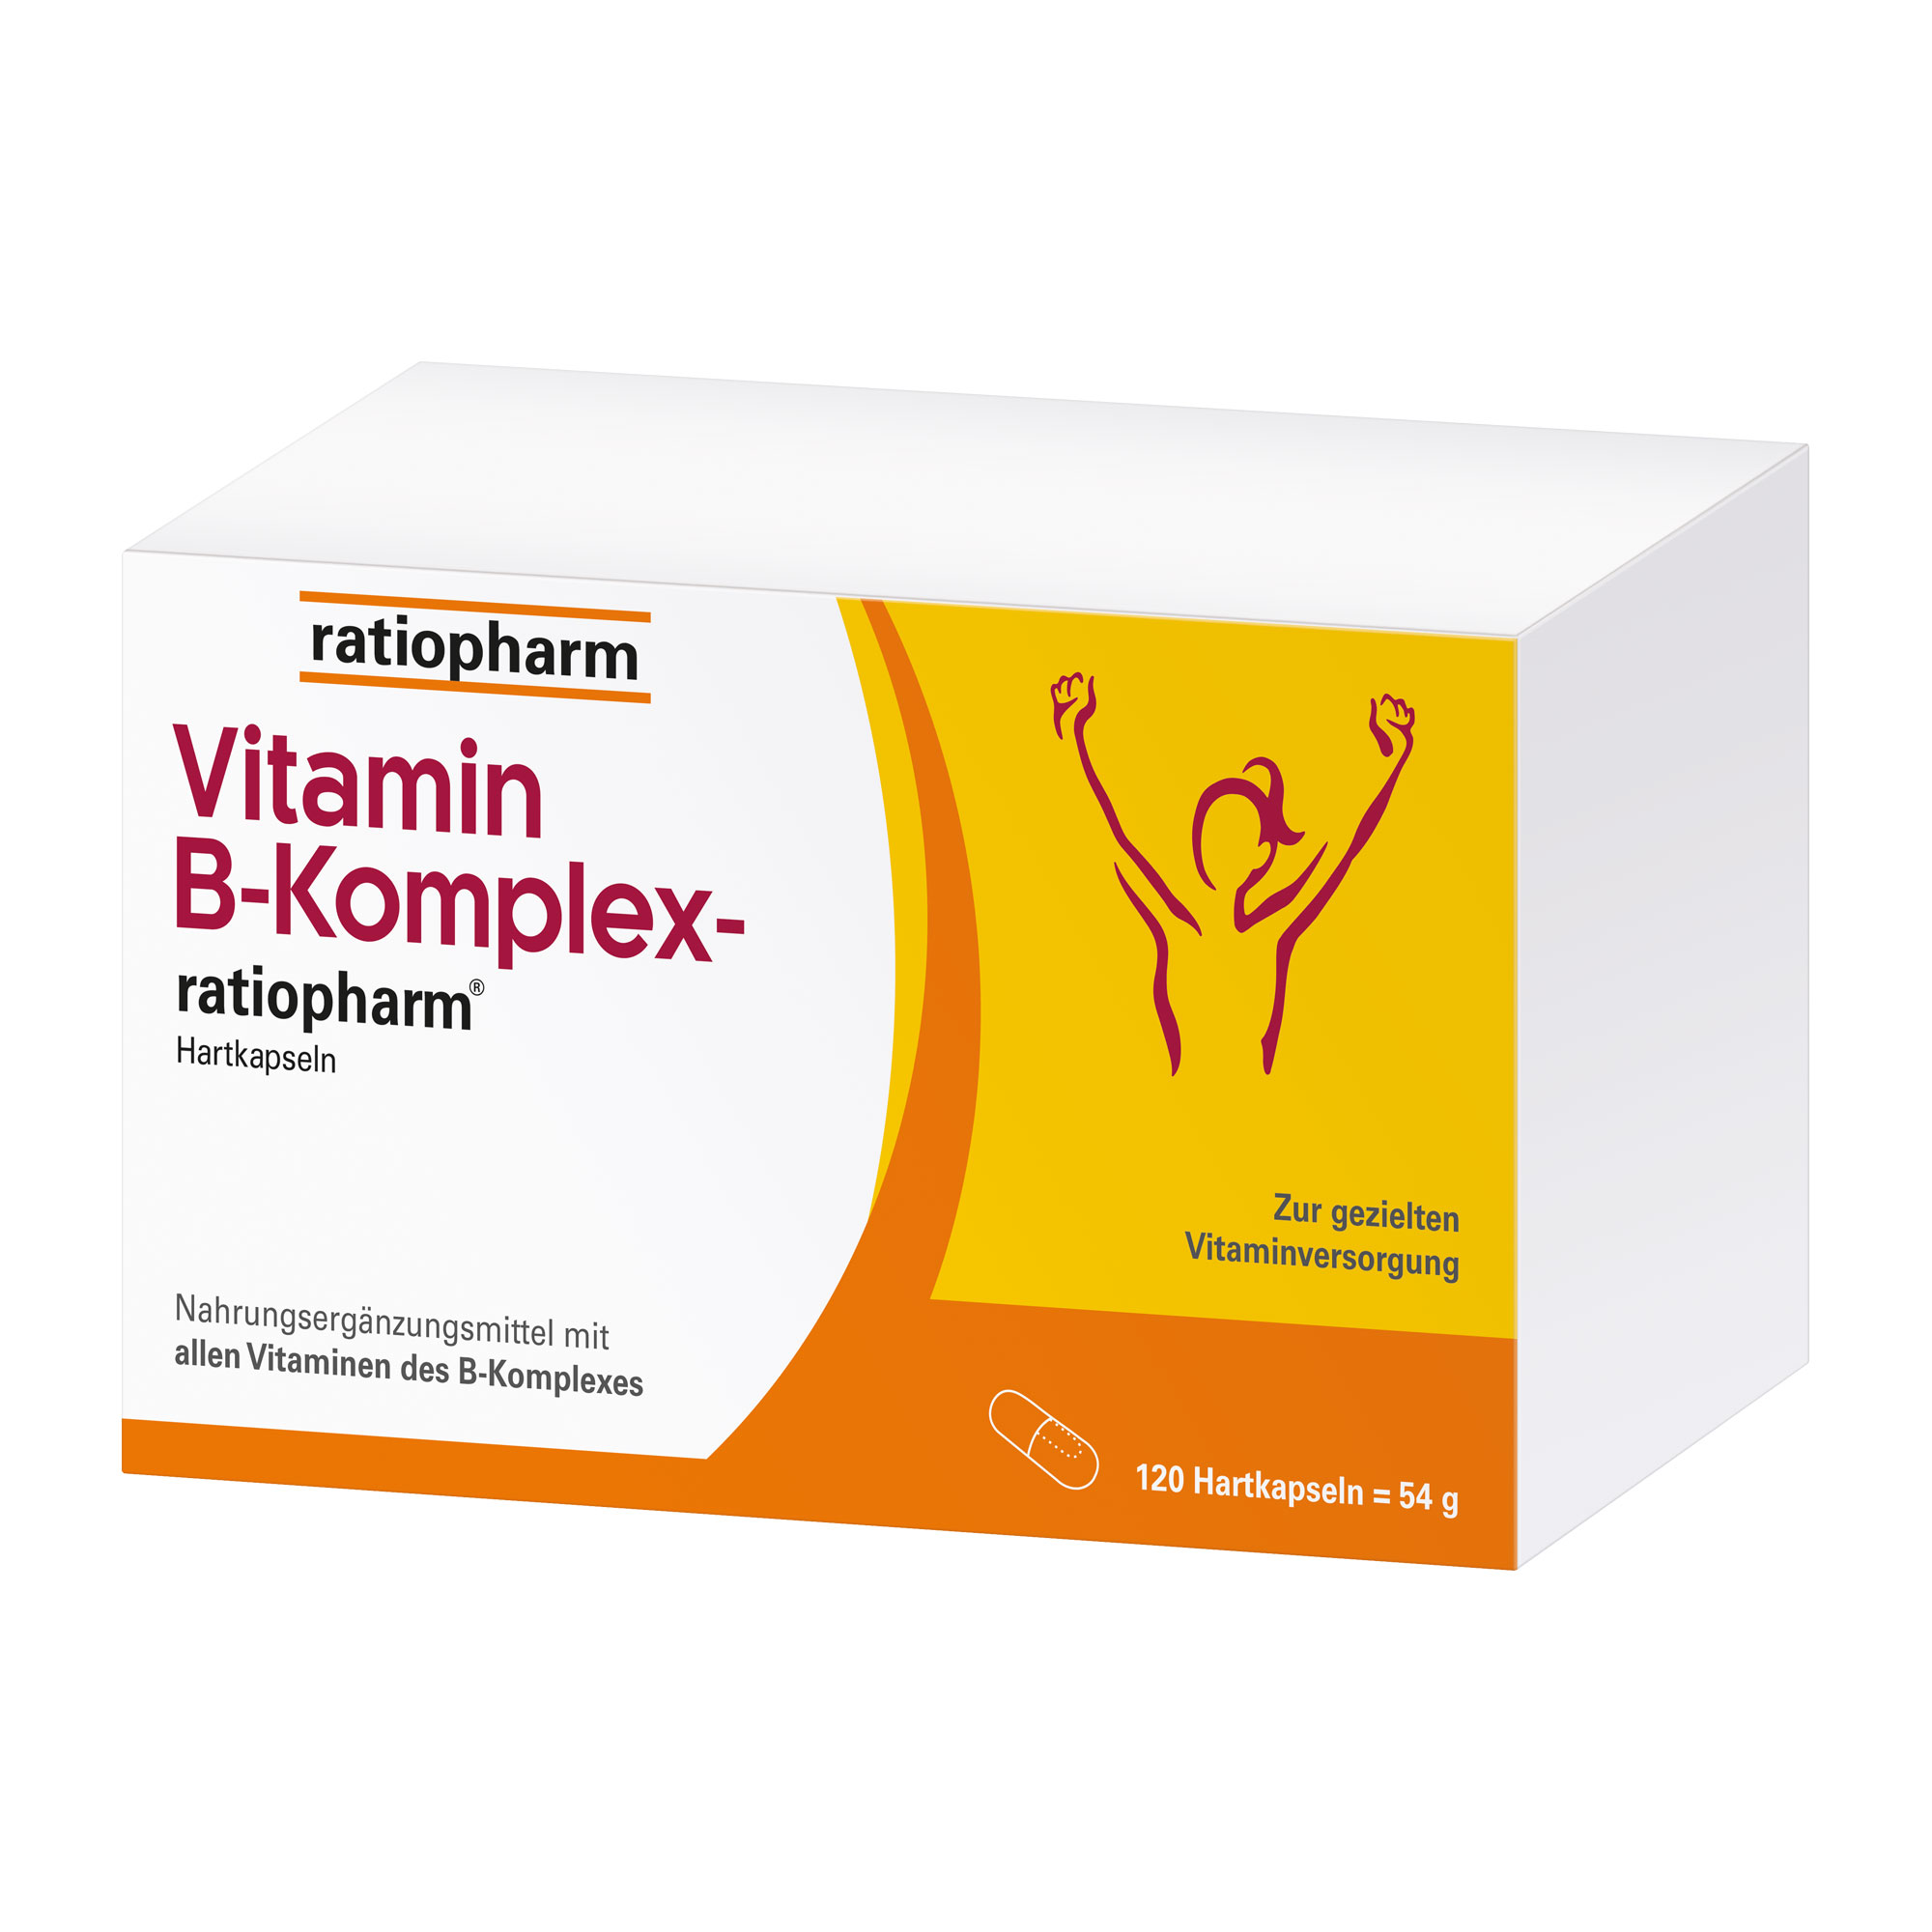 Nahrungsergänzungsmittel mit allen Vitaminen des B-Komplexes.